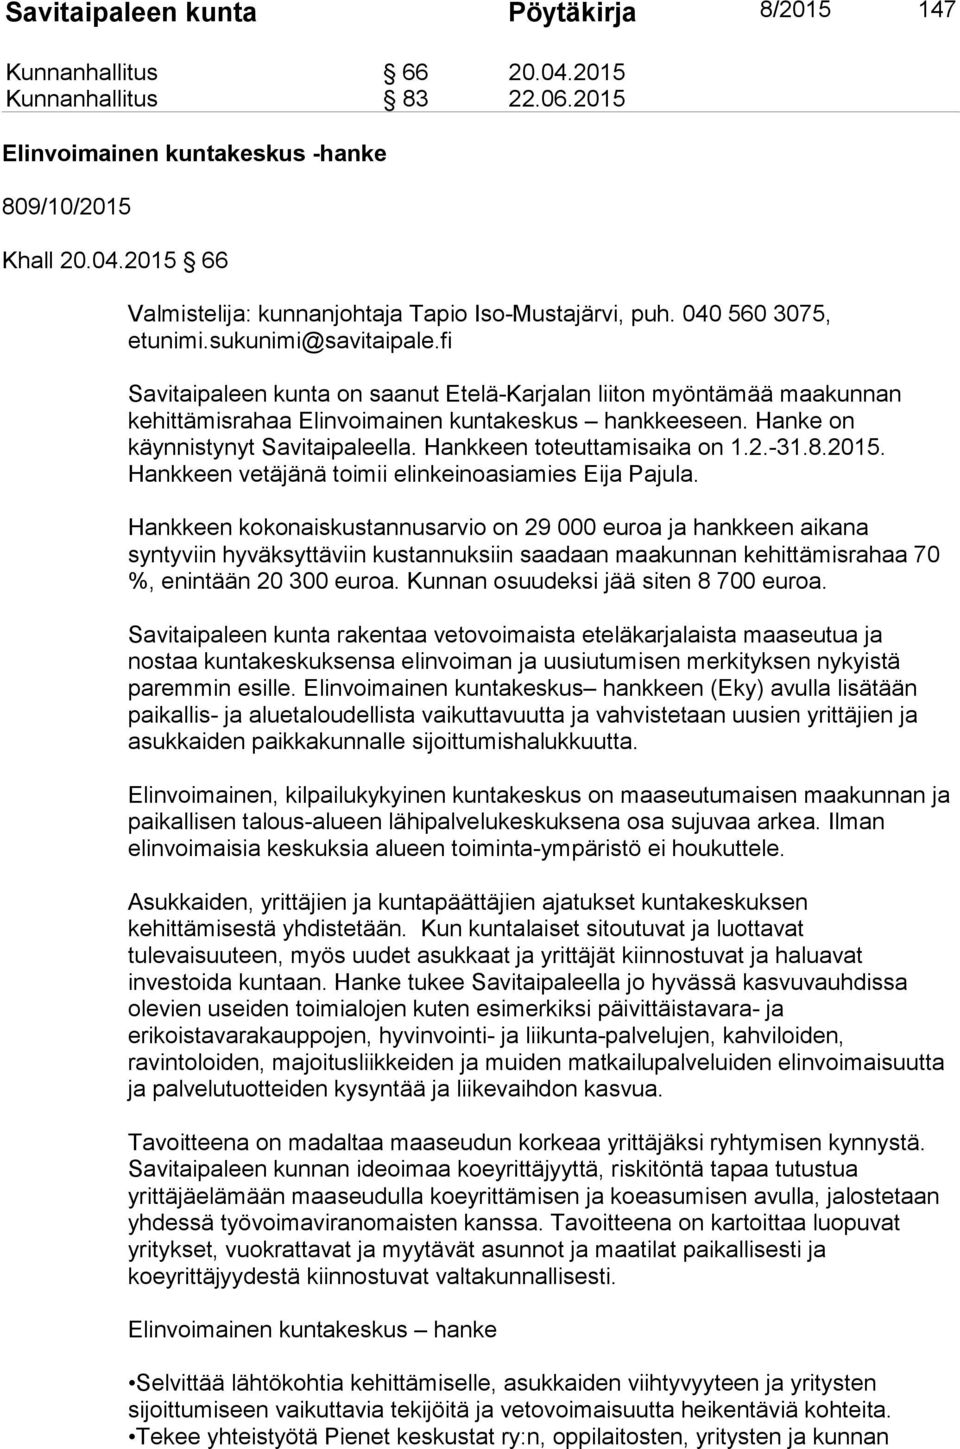 Hankkeen toteuttamisaika on 1.2.-31.8.2015. Hankkeen vetäjänä toimii elinkeinoasiamies Eija Pajula.